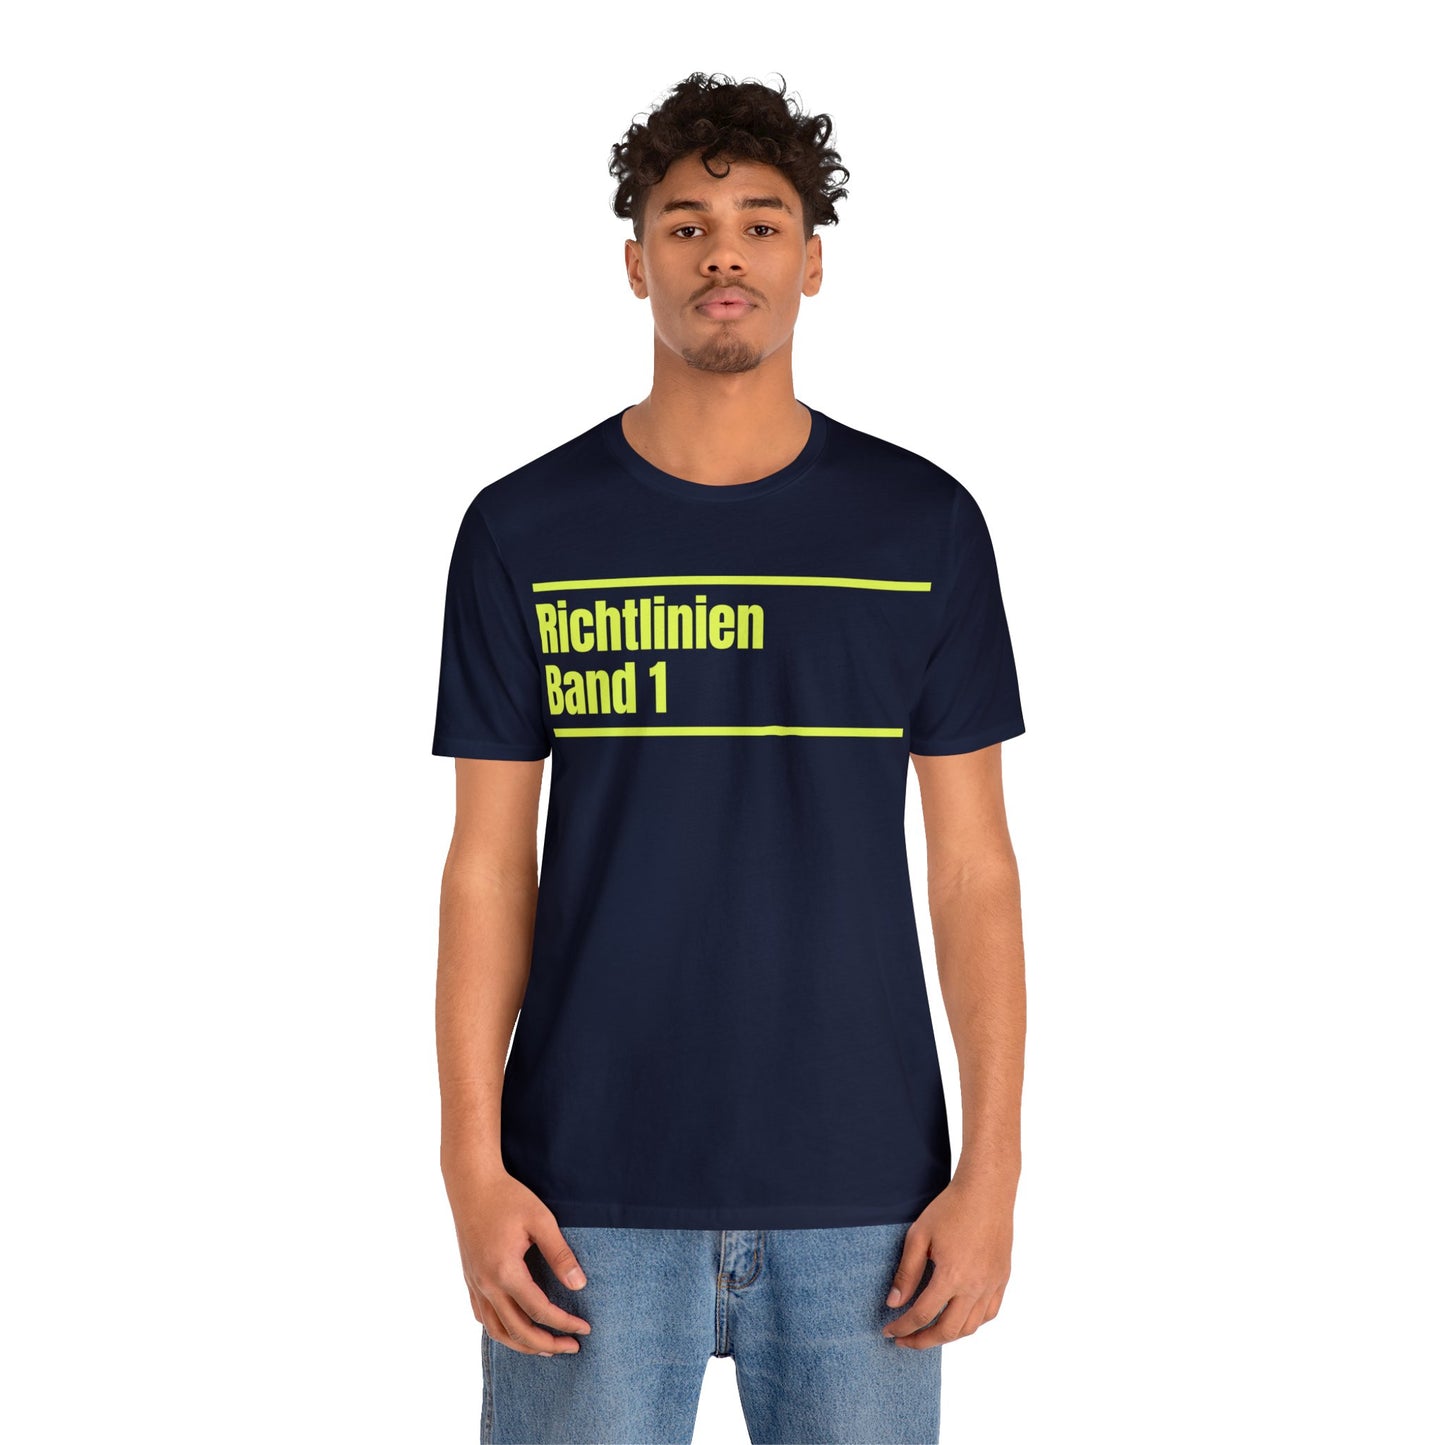 Richtlinien Band 1 – Unisex T-Shirt